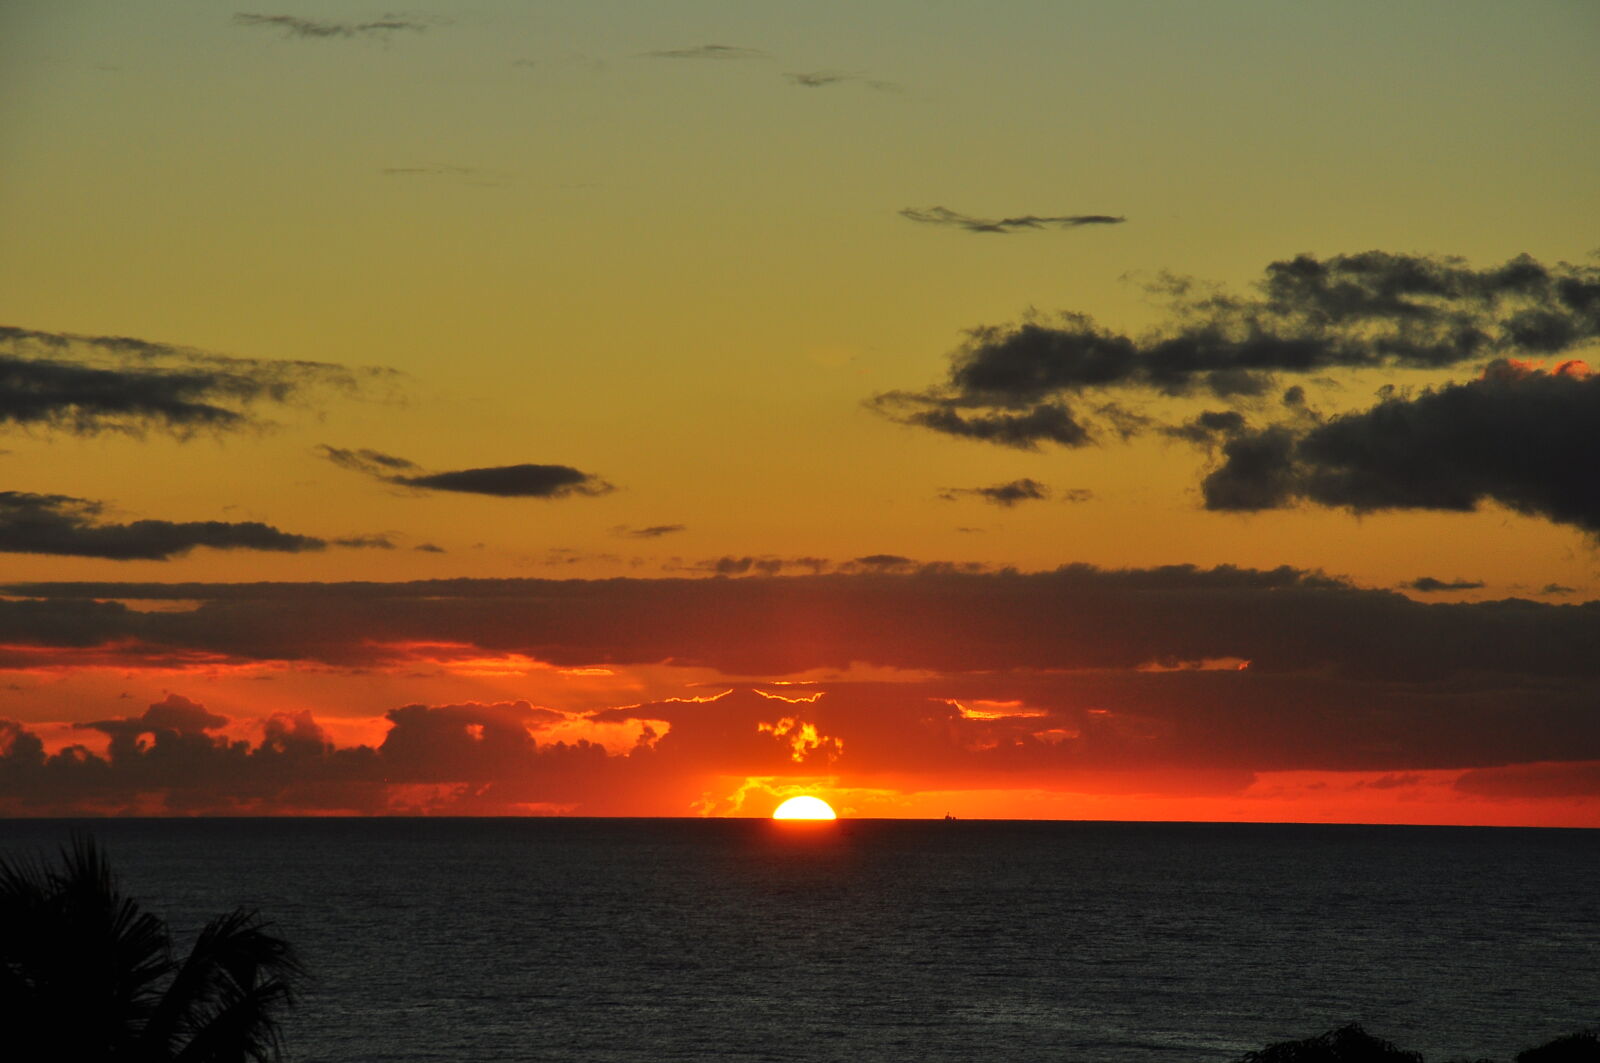 Nikon AF-S DX Nikkor 18-105mm F3.5-5.6G ED VR sample photo. Sunset over kauai photography